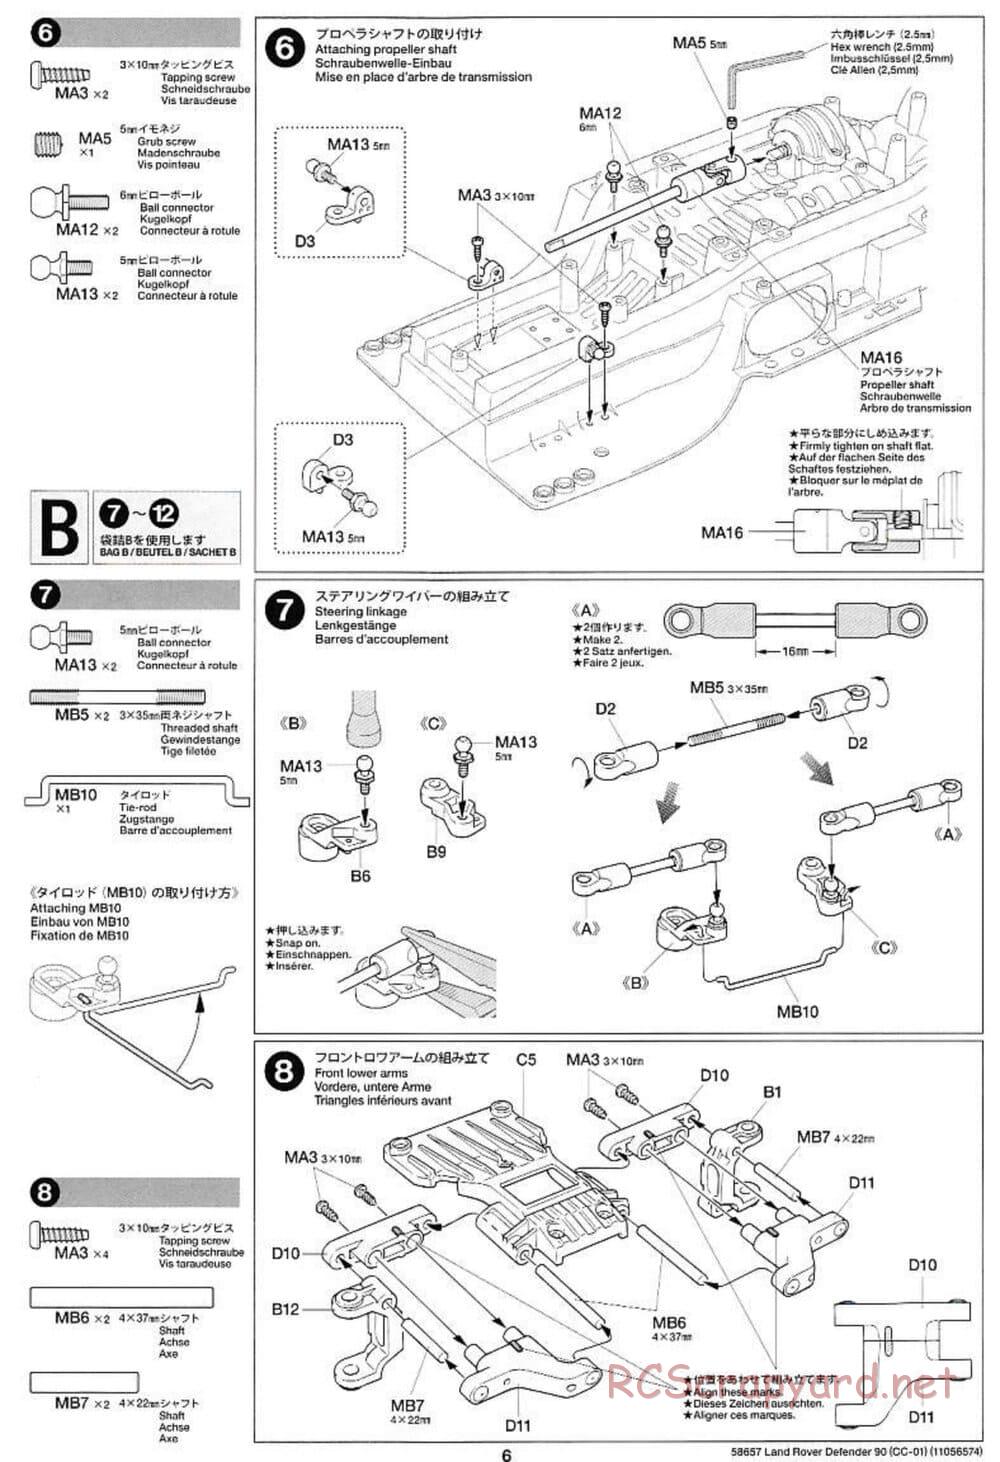 Tamiya - Land Rover Defender 90 - CC-01 Chassis - Manual - Page 6